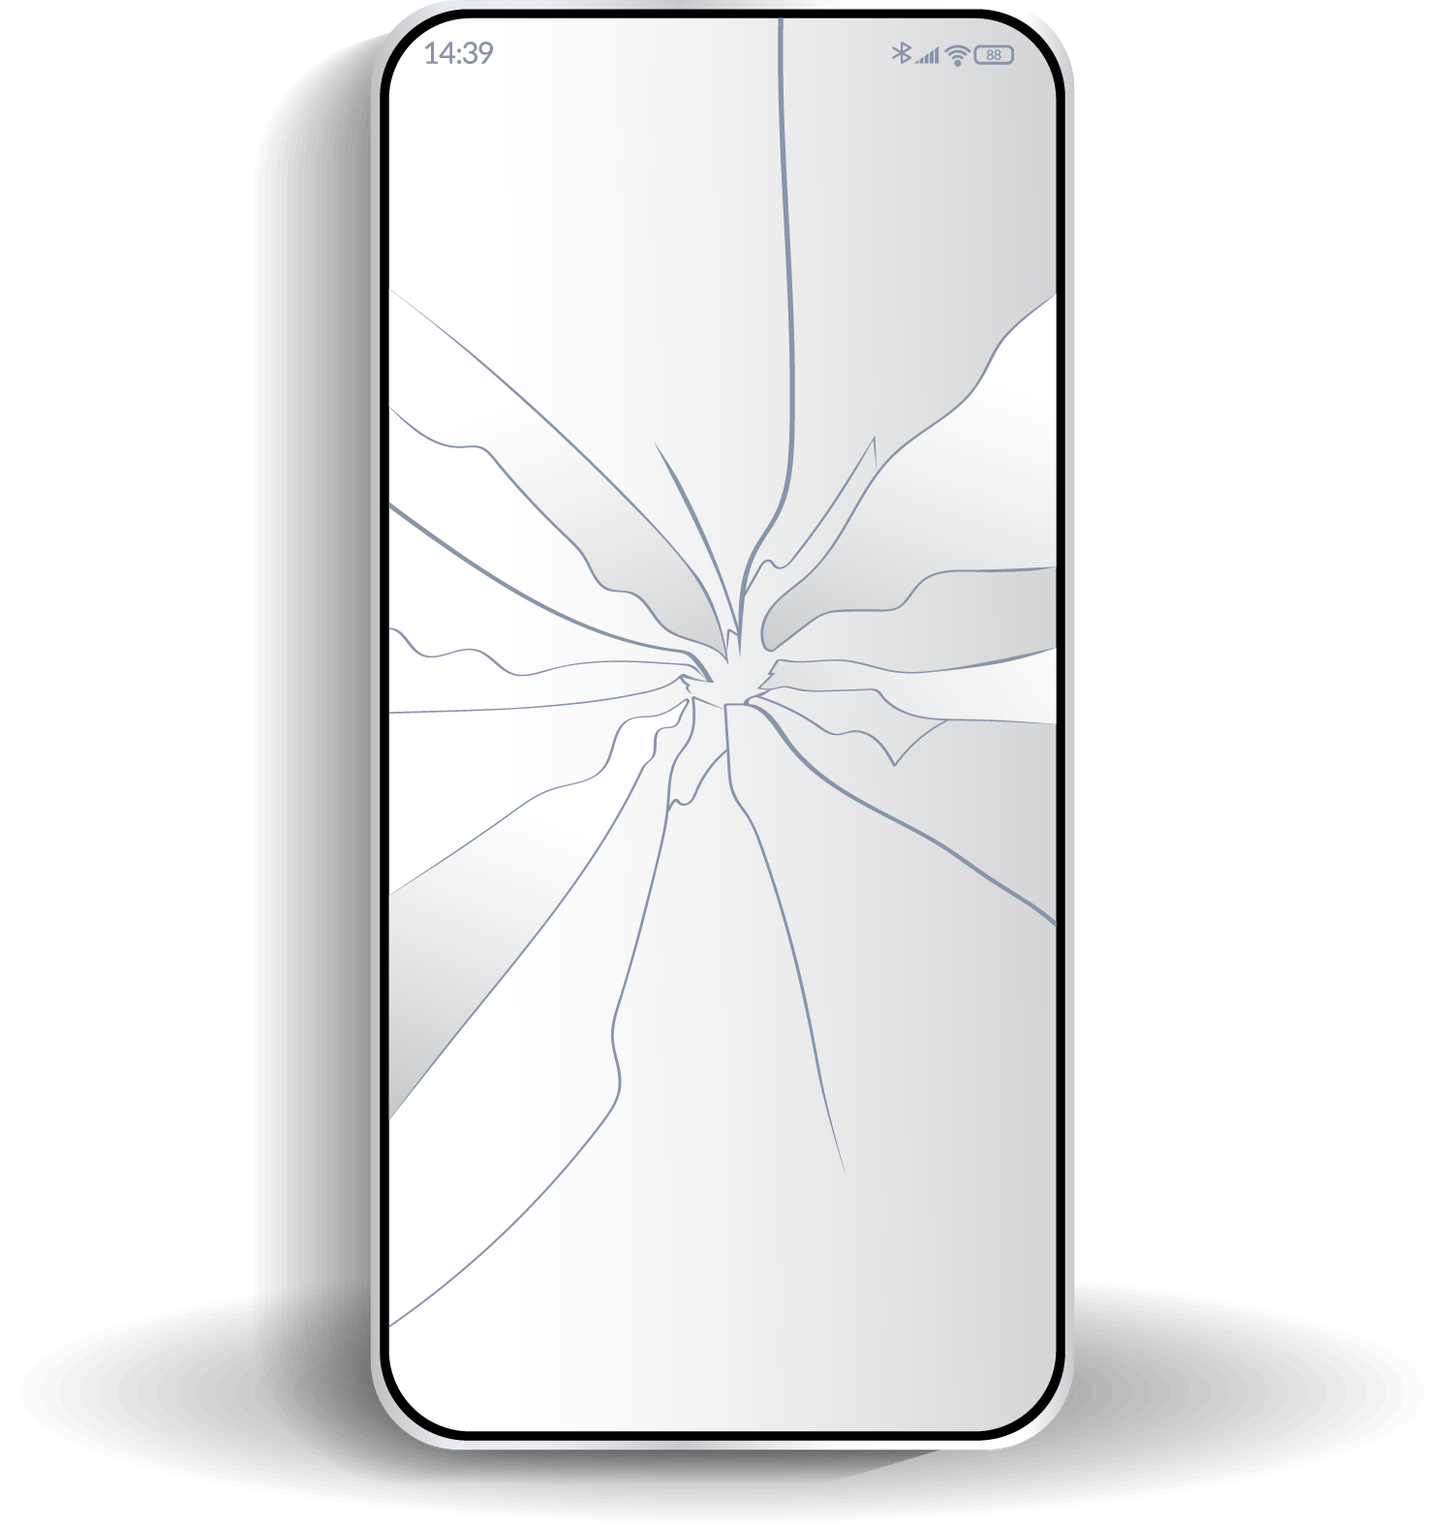 iPhone XR Cracked Screen Repair-LCD Replacements | AppDroid Repair